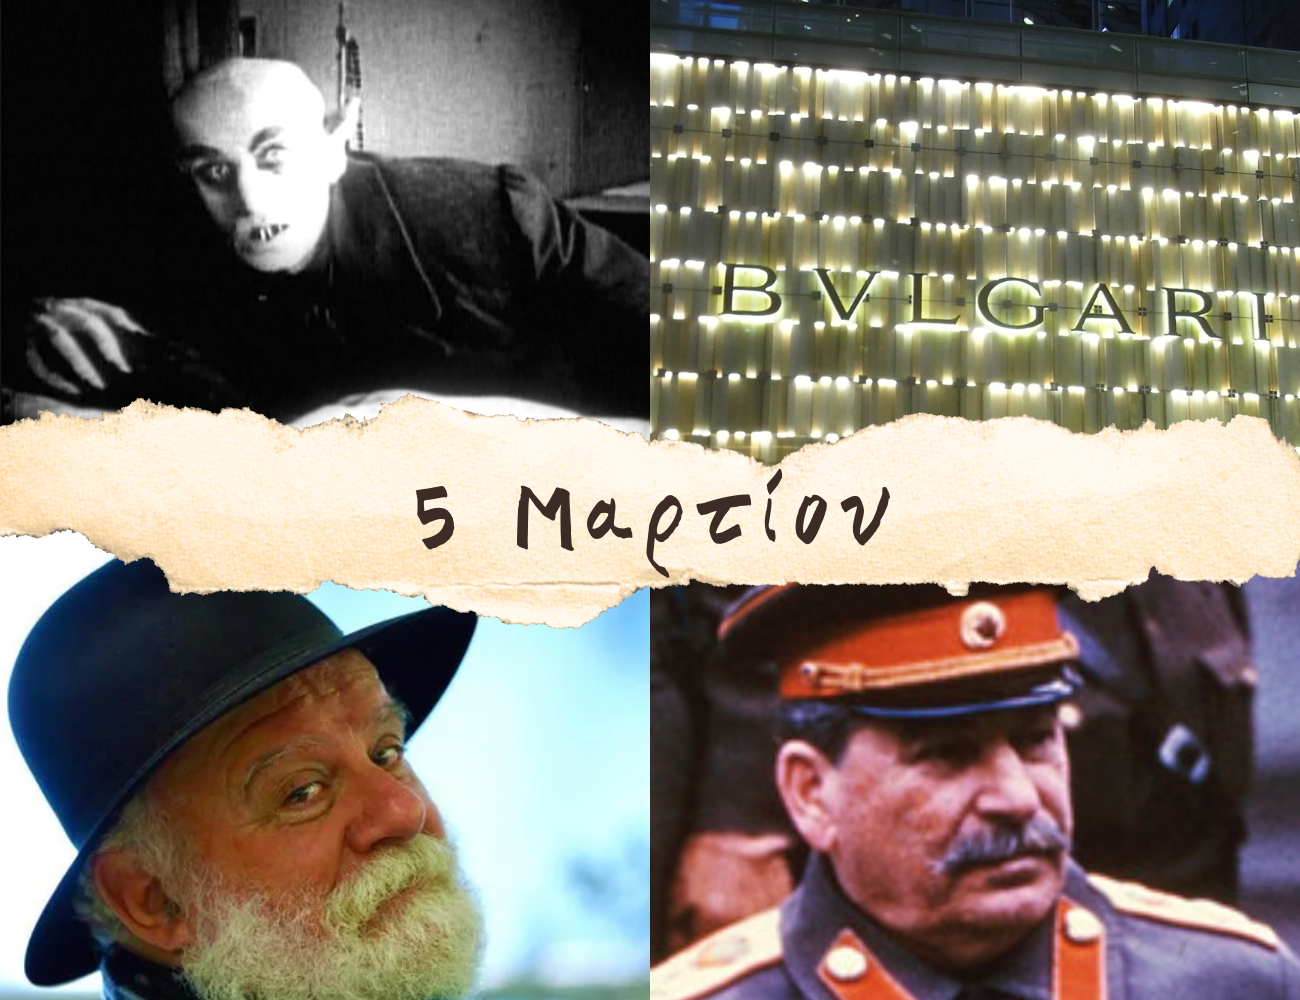 10 γεγονότα που συνέβησαν σαν σήμερα, 5 Μαρτίου. Μανώλης Ρασούλης, Σωτήριος Βούλγαρης «BVLGARI» και Ιωσήφ Στάλιν